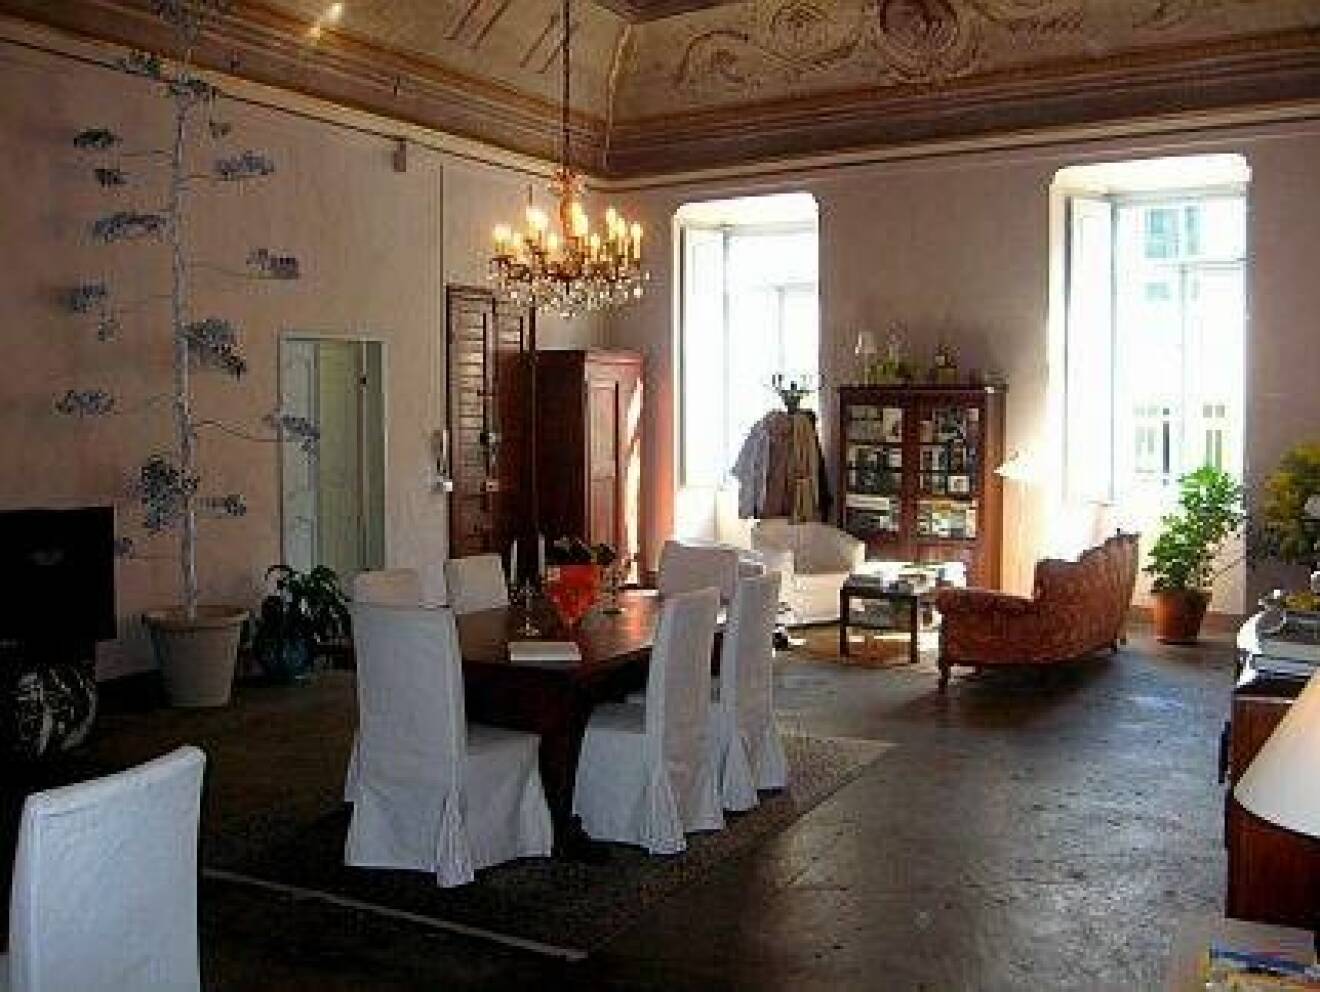 Casa Albertieri - rummen och matsalen är inbjudande hemtrevliga.